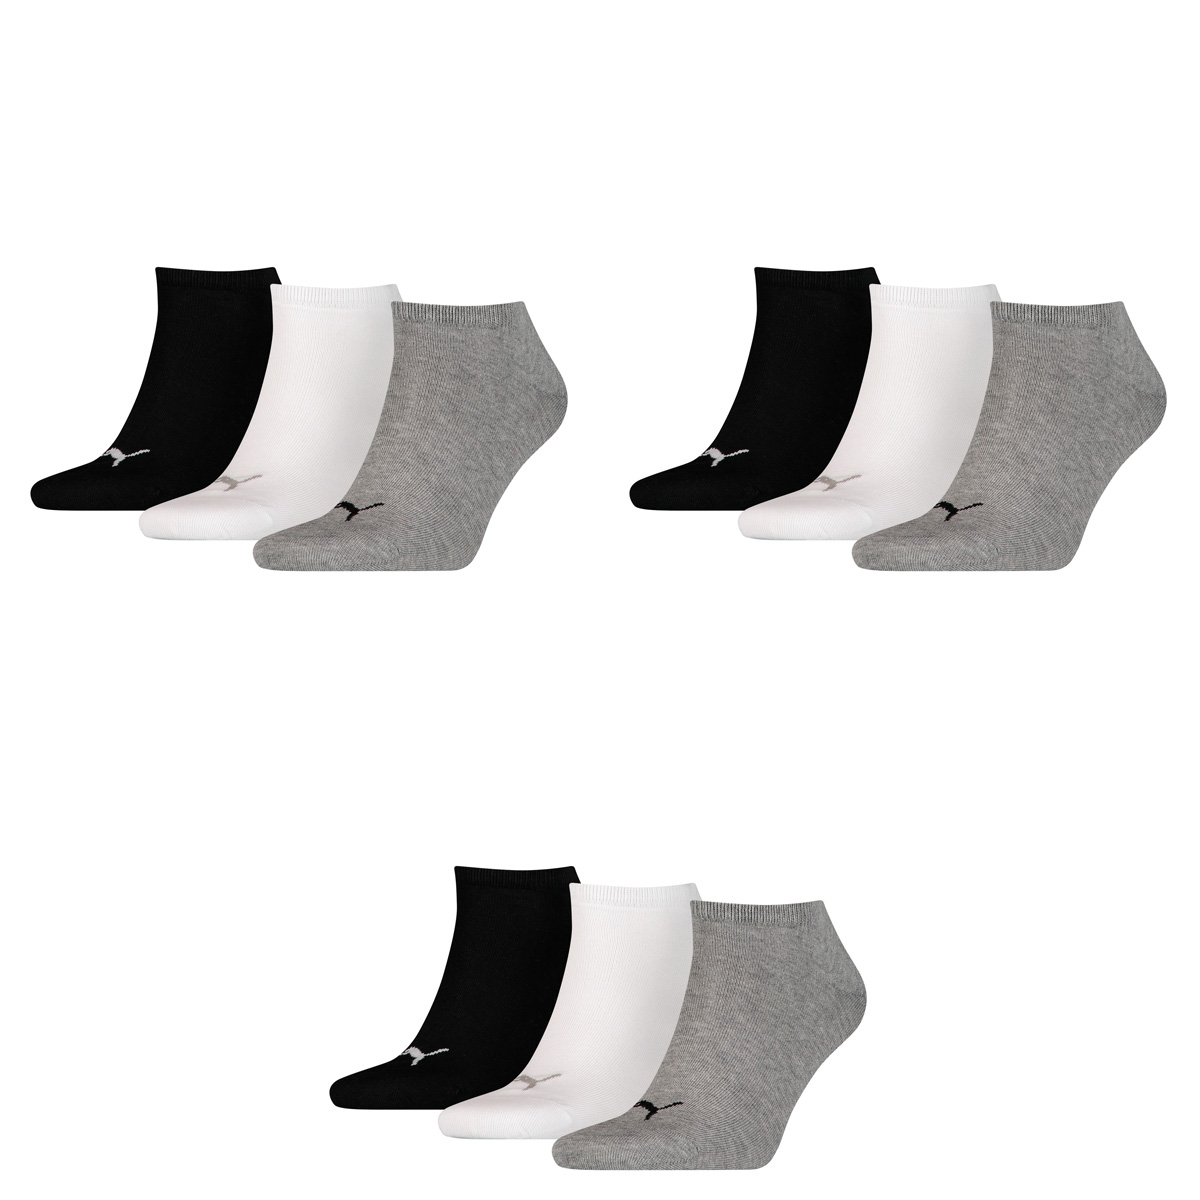 Puma Herren Unisex Socken Plain, 3er Pack, Grau (Grey/White/Black), Gr. 47-49